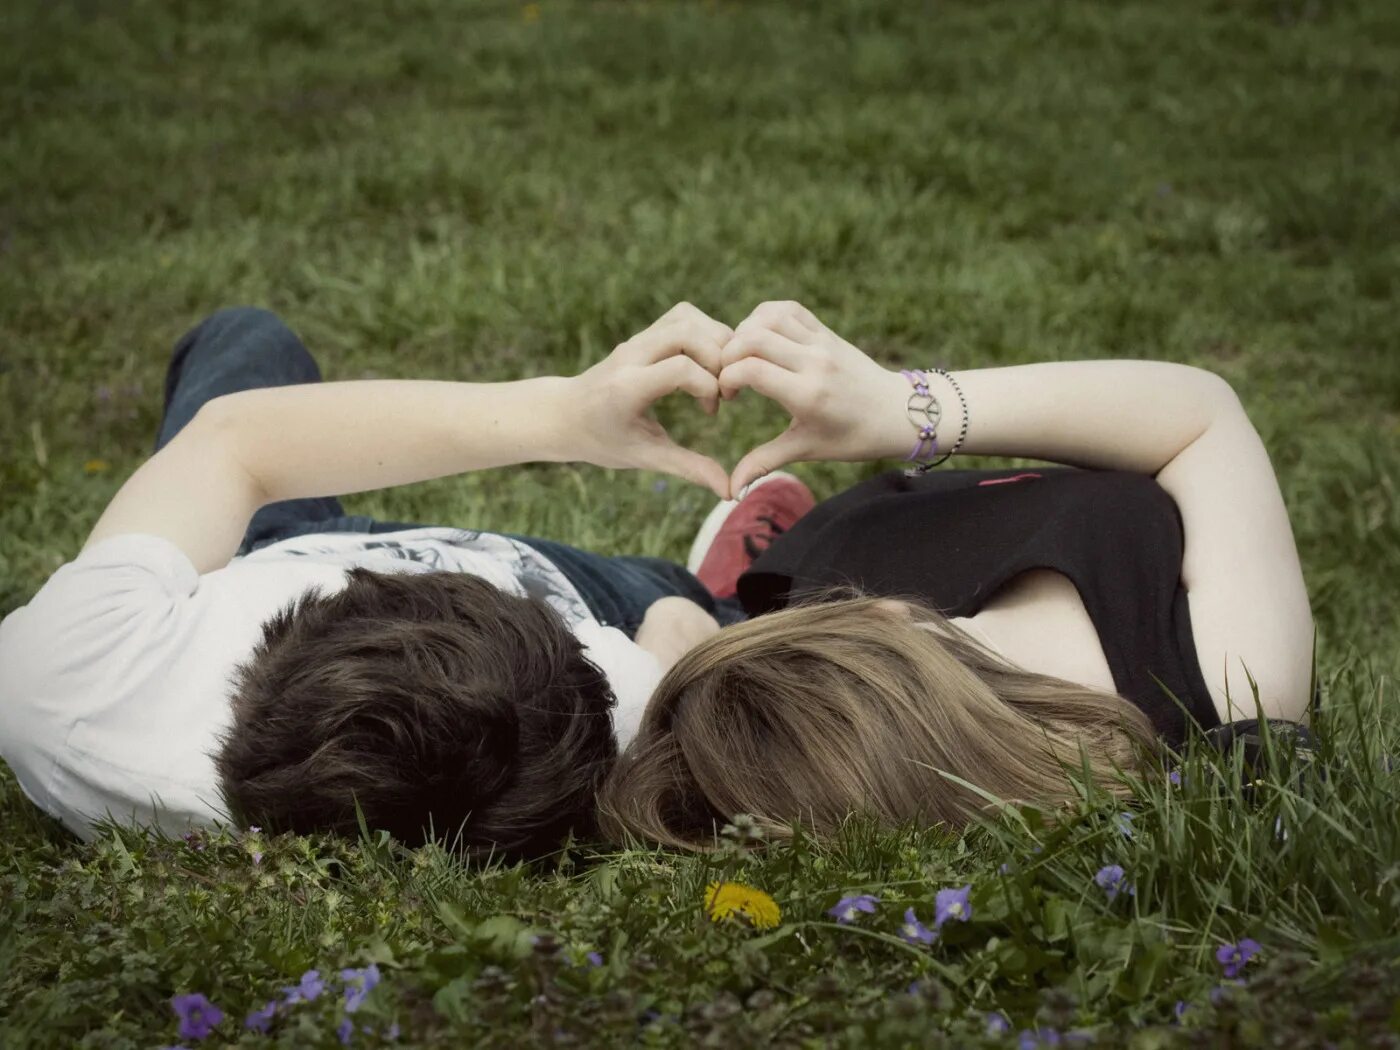 Любовь моей жизни 8. Пара влюбленных. Влюбленные лежат на траве. Подростковая влюбленность. Картинки влюбленных.